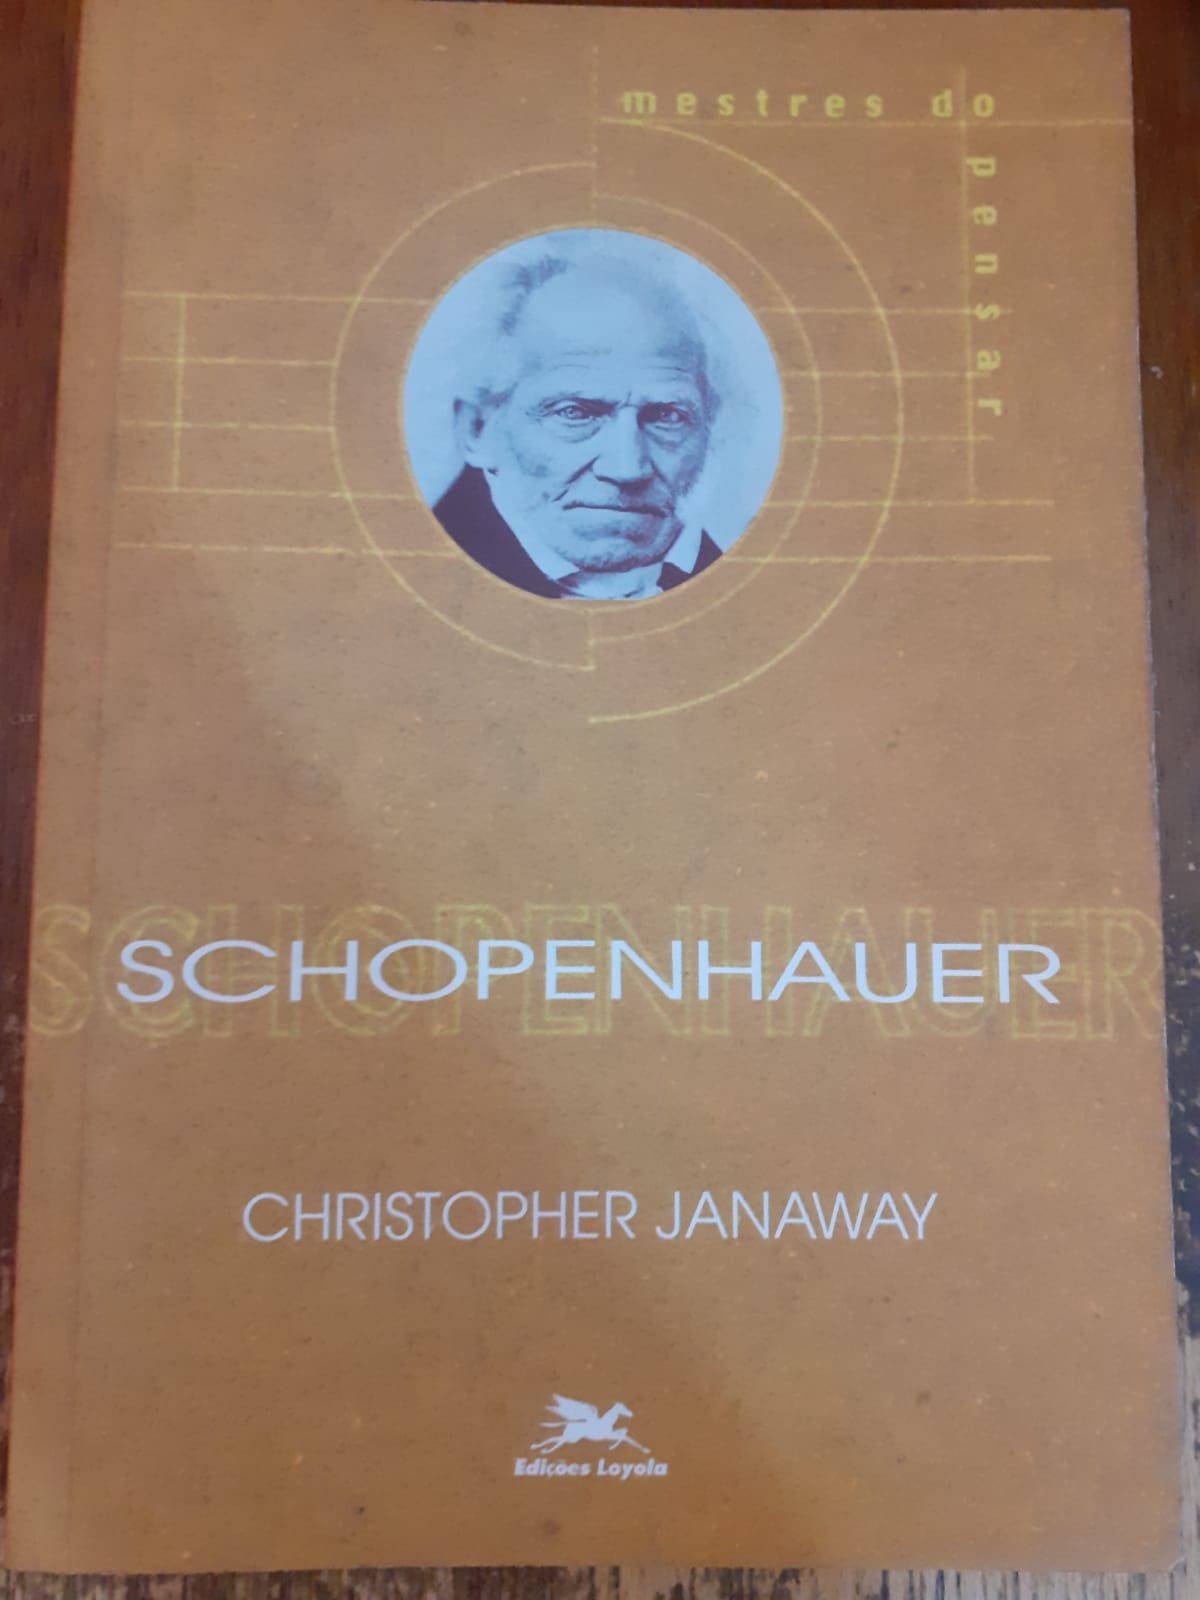 Schopenhauer (Christopher Janaway)